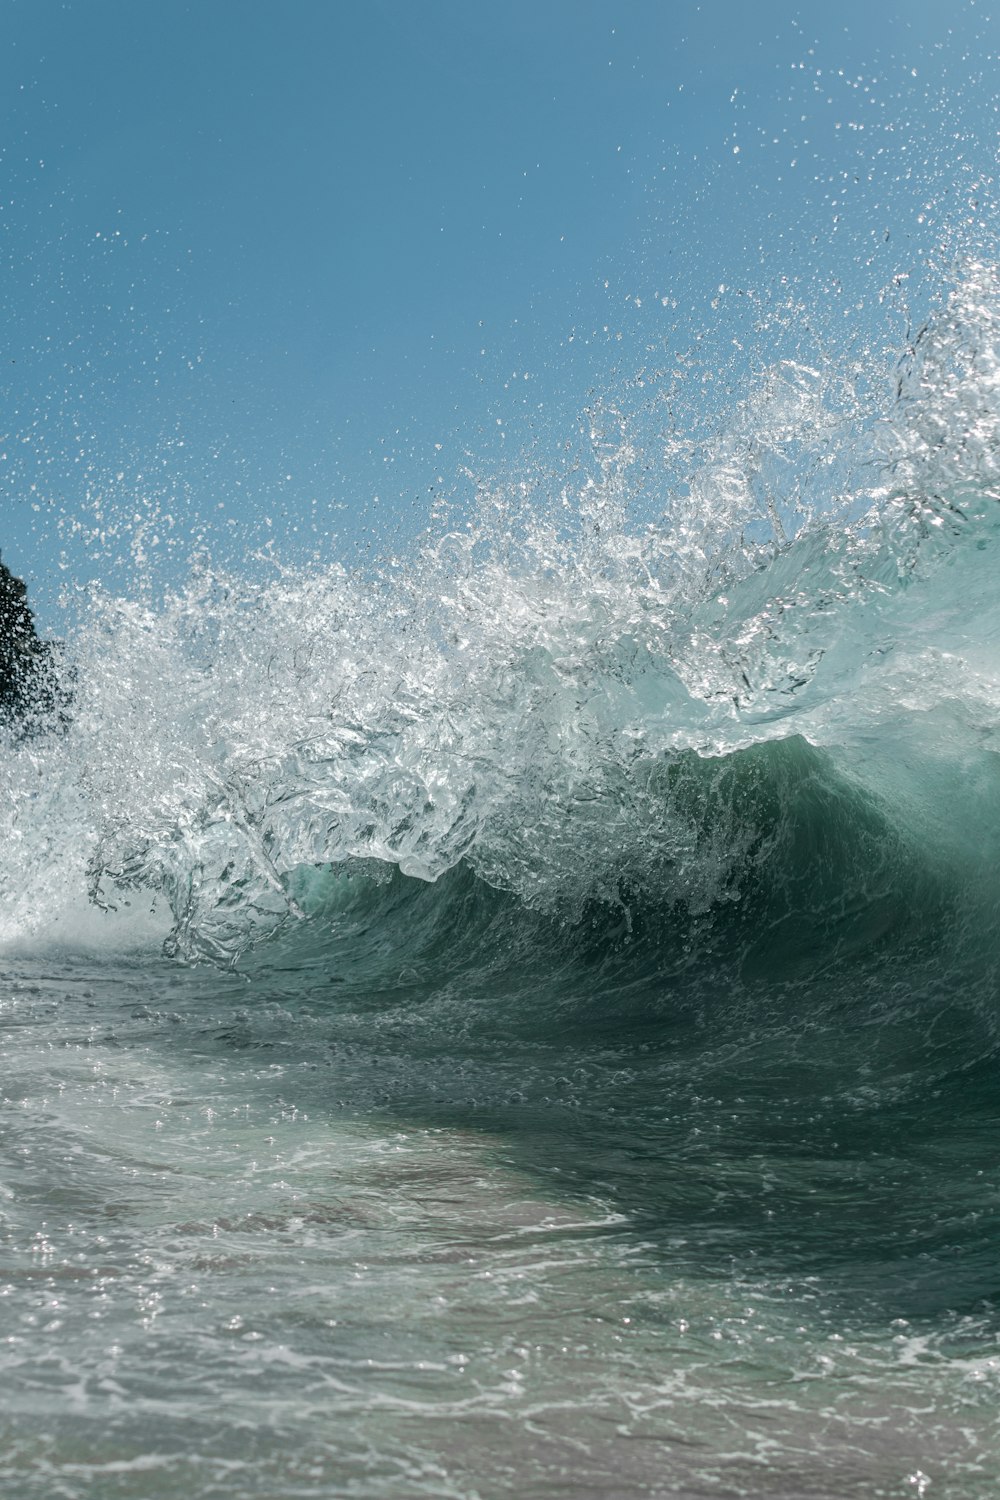 fotografia time-lapse de uma onda do mar respingando